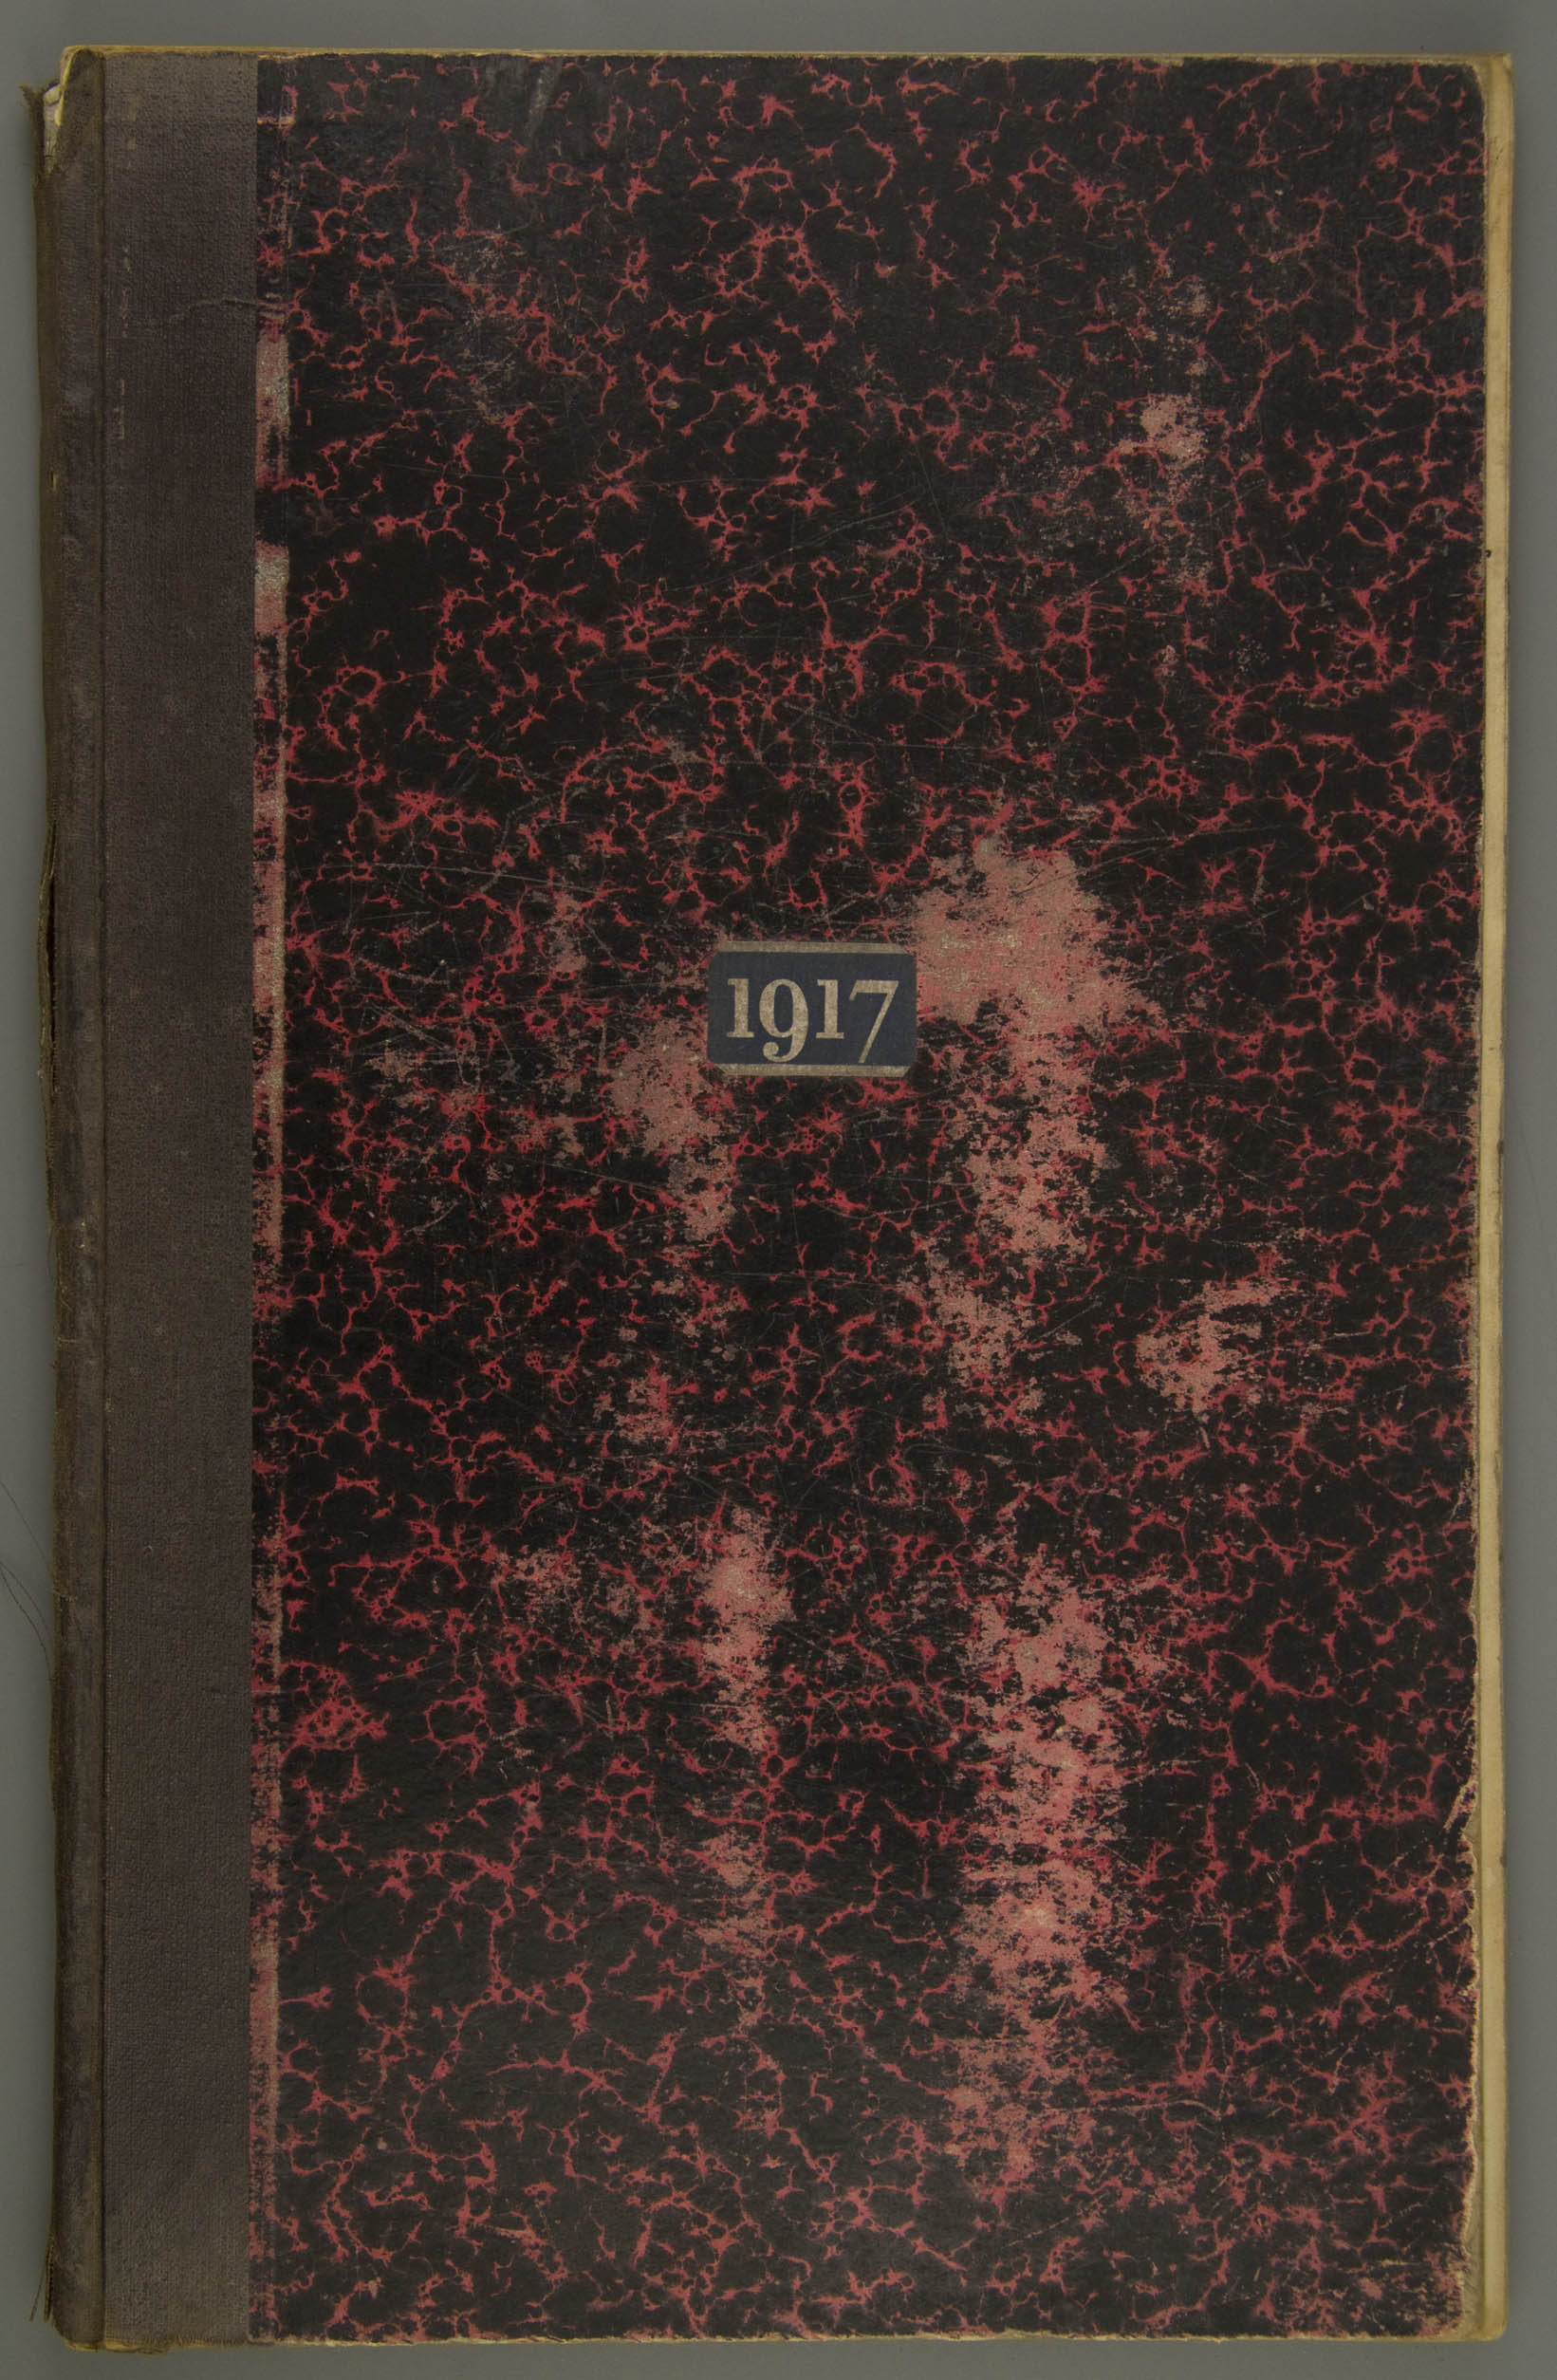 01-10.045-goedewaagen-loonboek-tremsters-1917-001